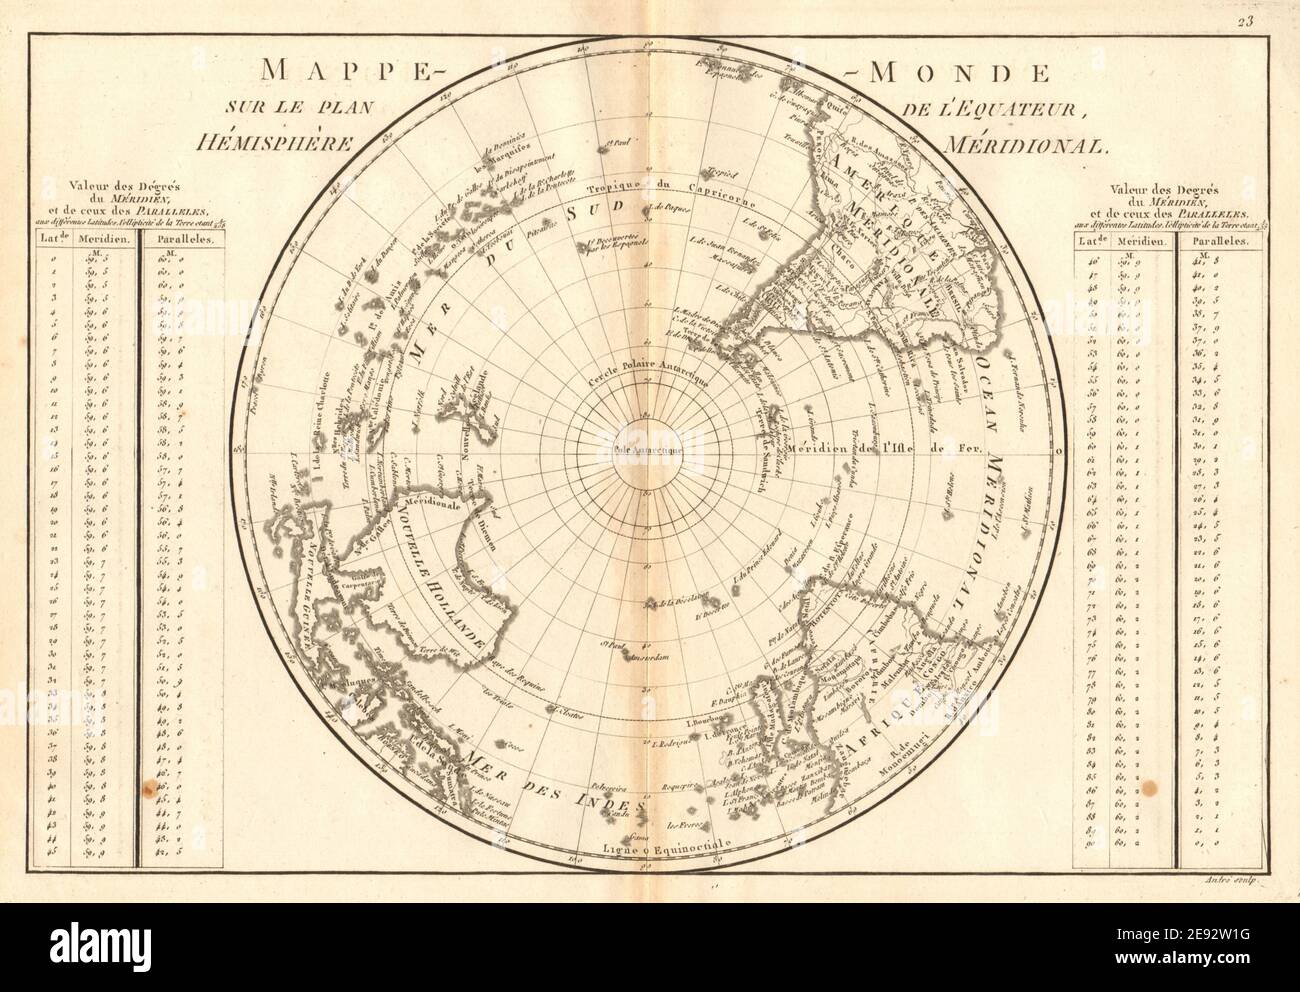 Mappe-monde sur le plan de l’Équateur, hémisphère Méridional. BONNE 1787 Banque D'Images